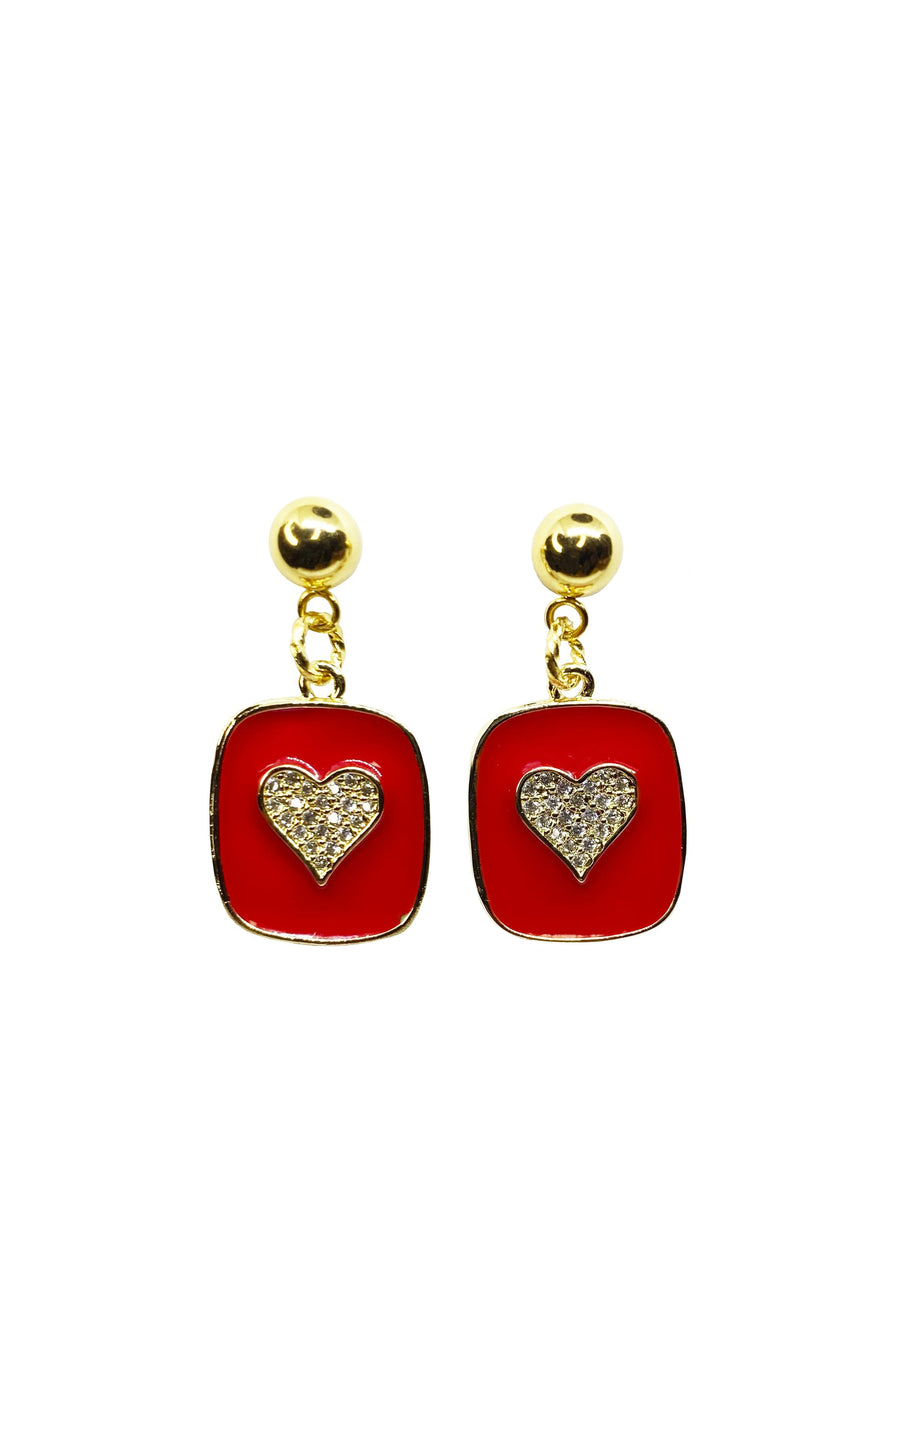 Heart enamel amulette earrings